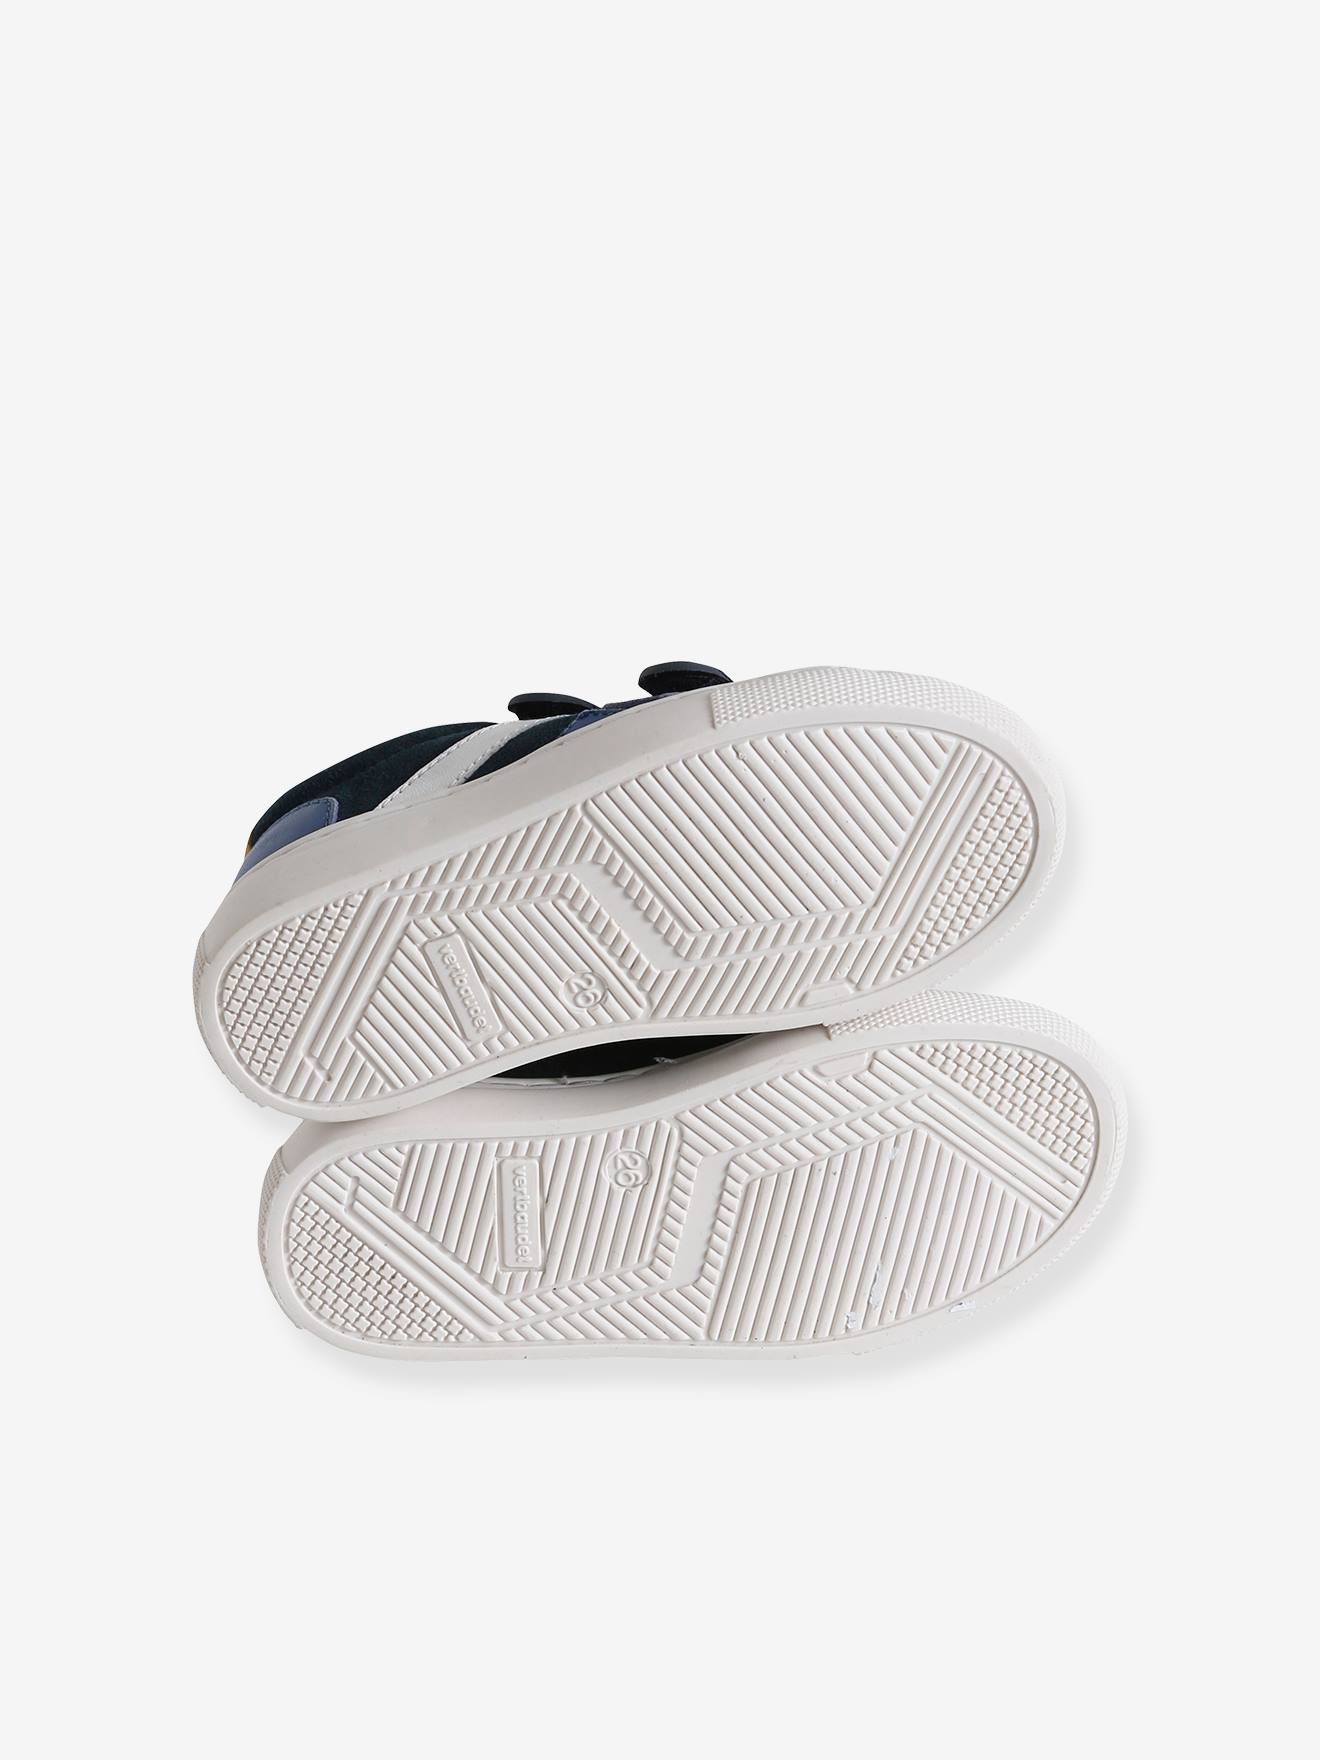 Zapatillas deportivas infantil de piel Adidas en color blanco con cierre  adherentes